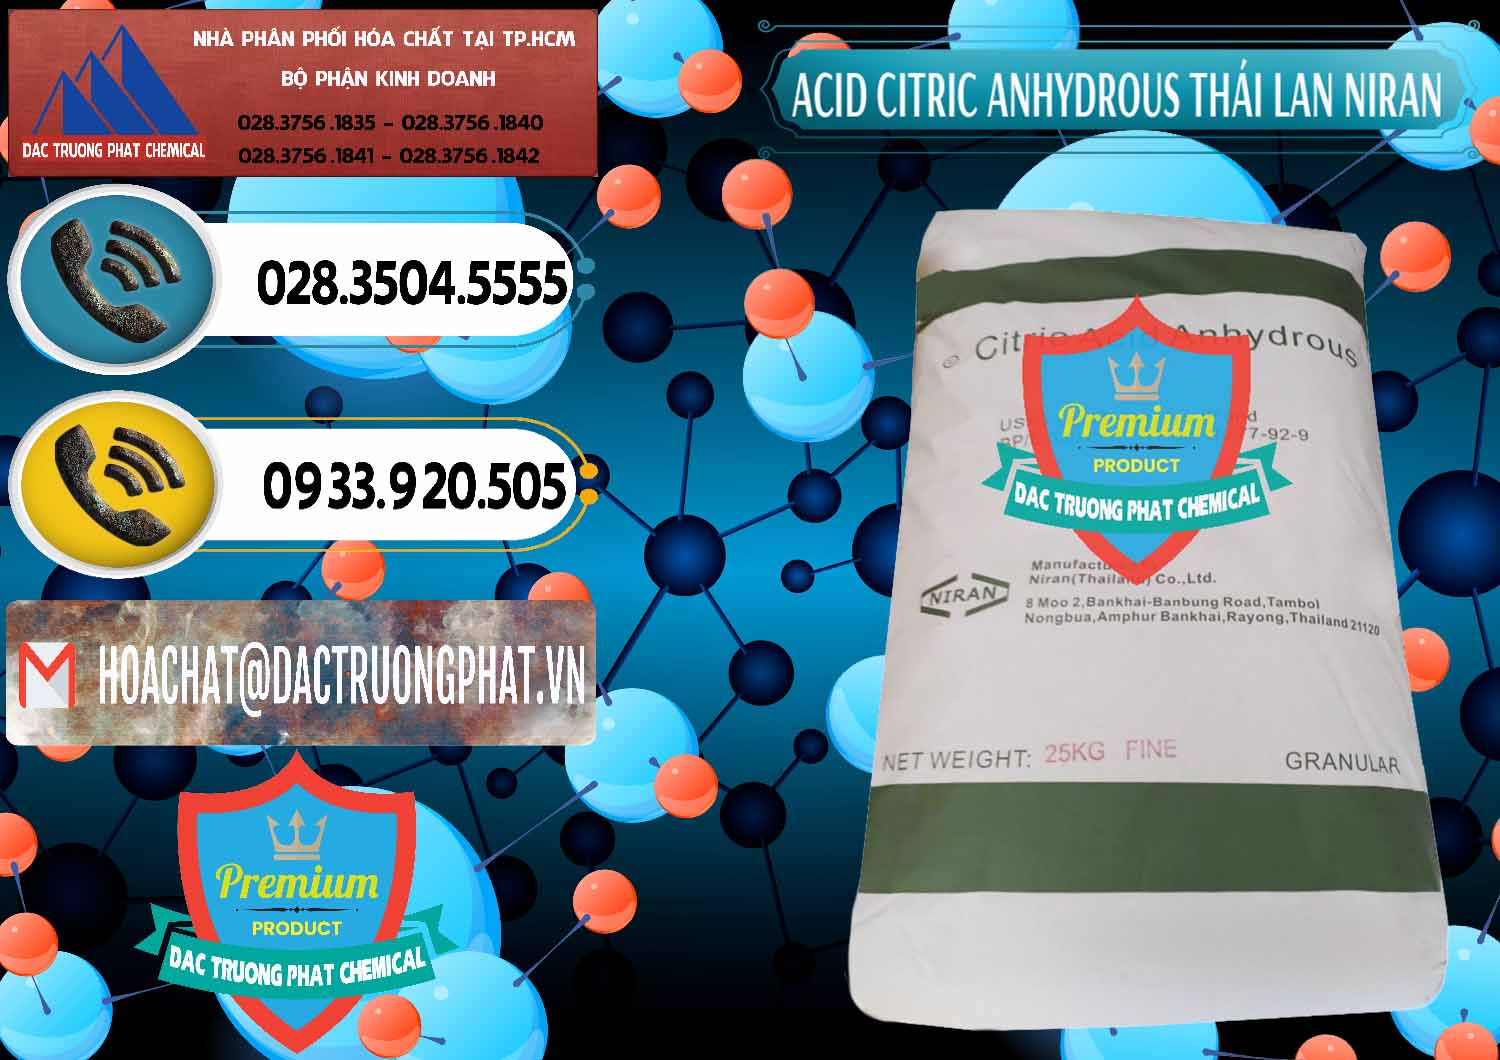 Cty chuyên bán - cung cấp Acid Citric - Axit Citric Anhydrous - Thái Lan Niran - 0231 - Cty chuyên bán & cung cấp hóa chất tại TP.HCM - hoachatdetnhuom.vn